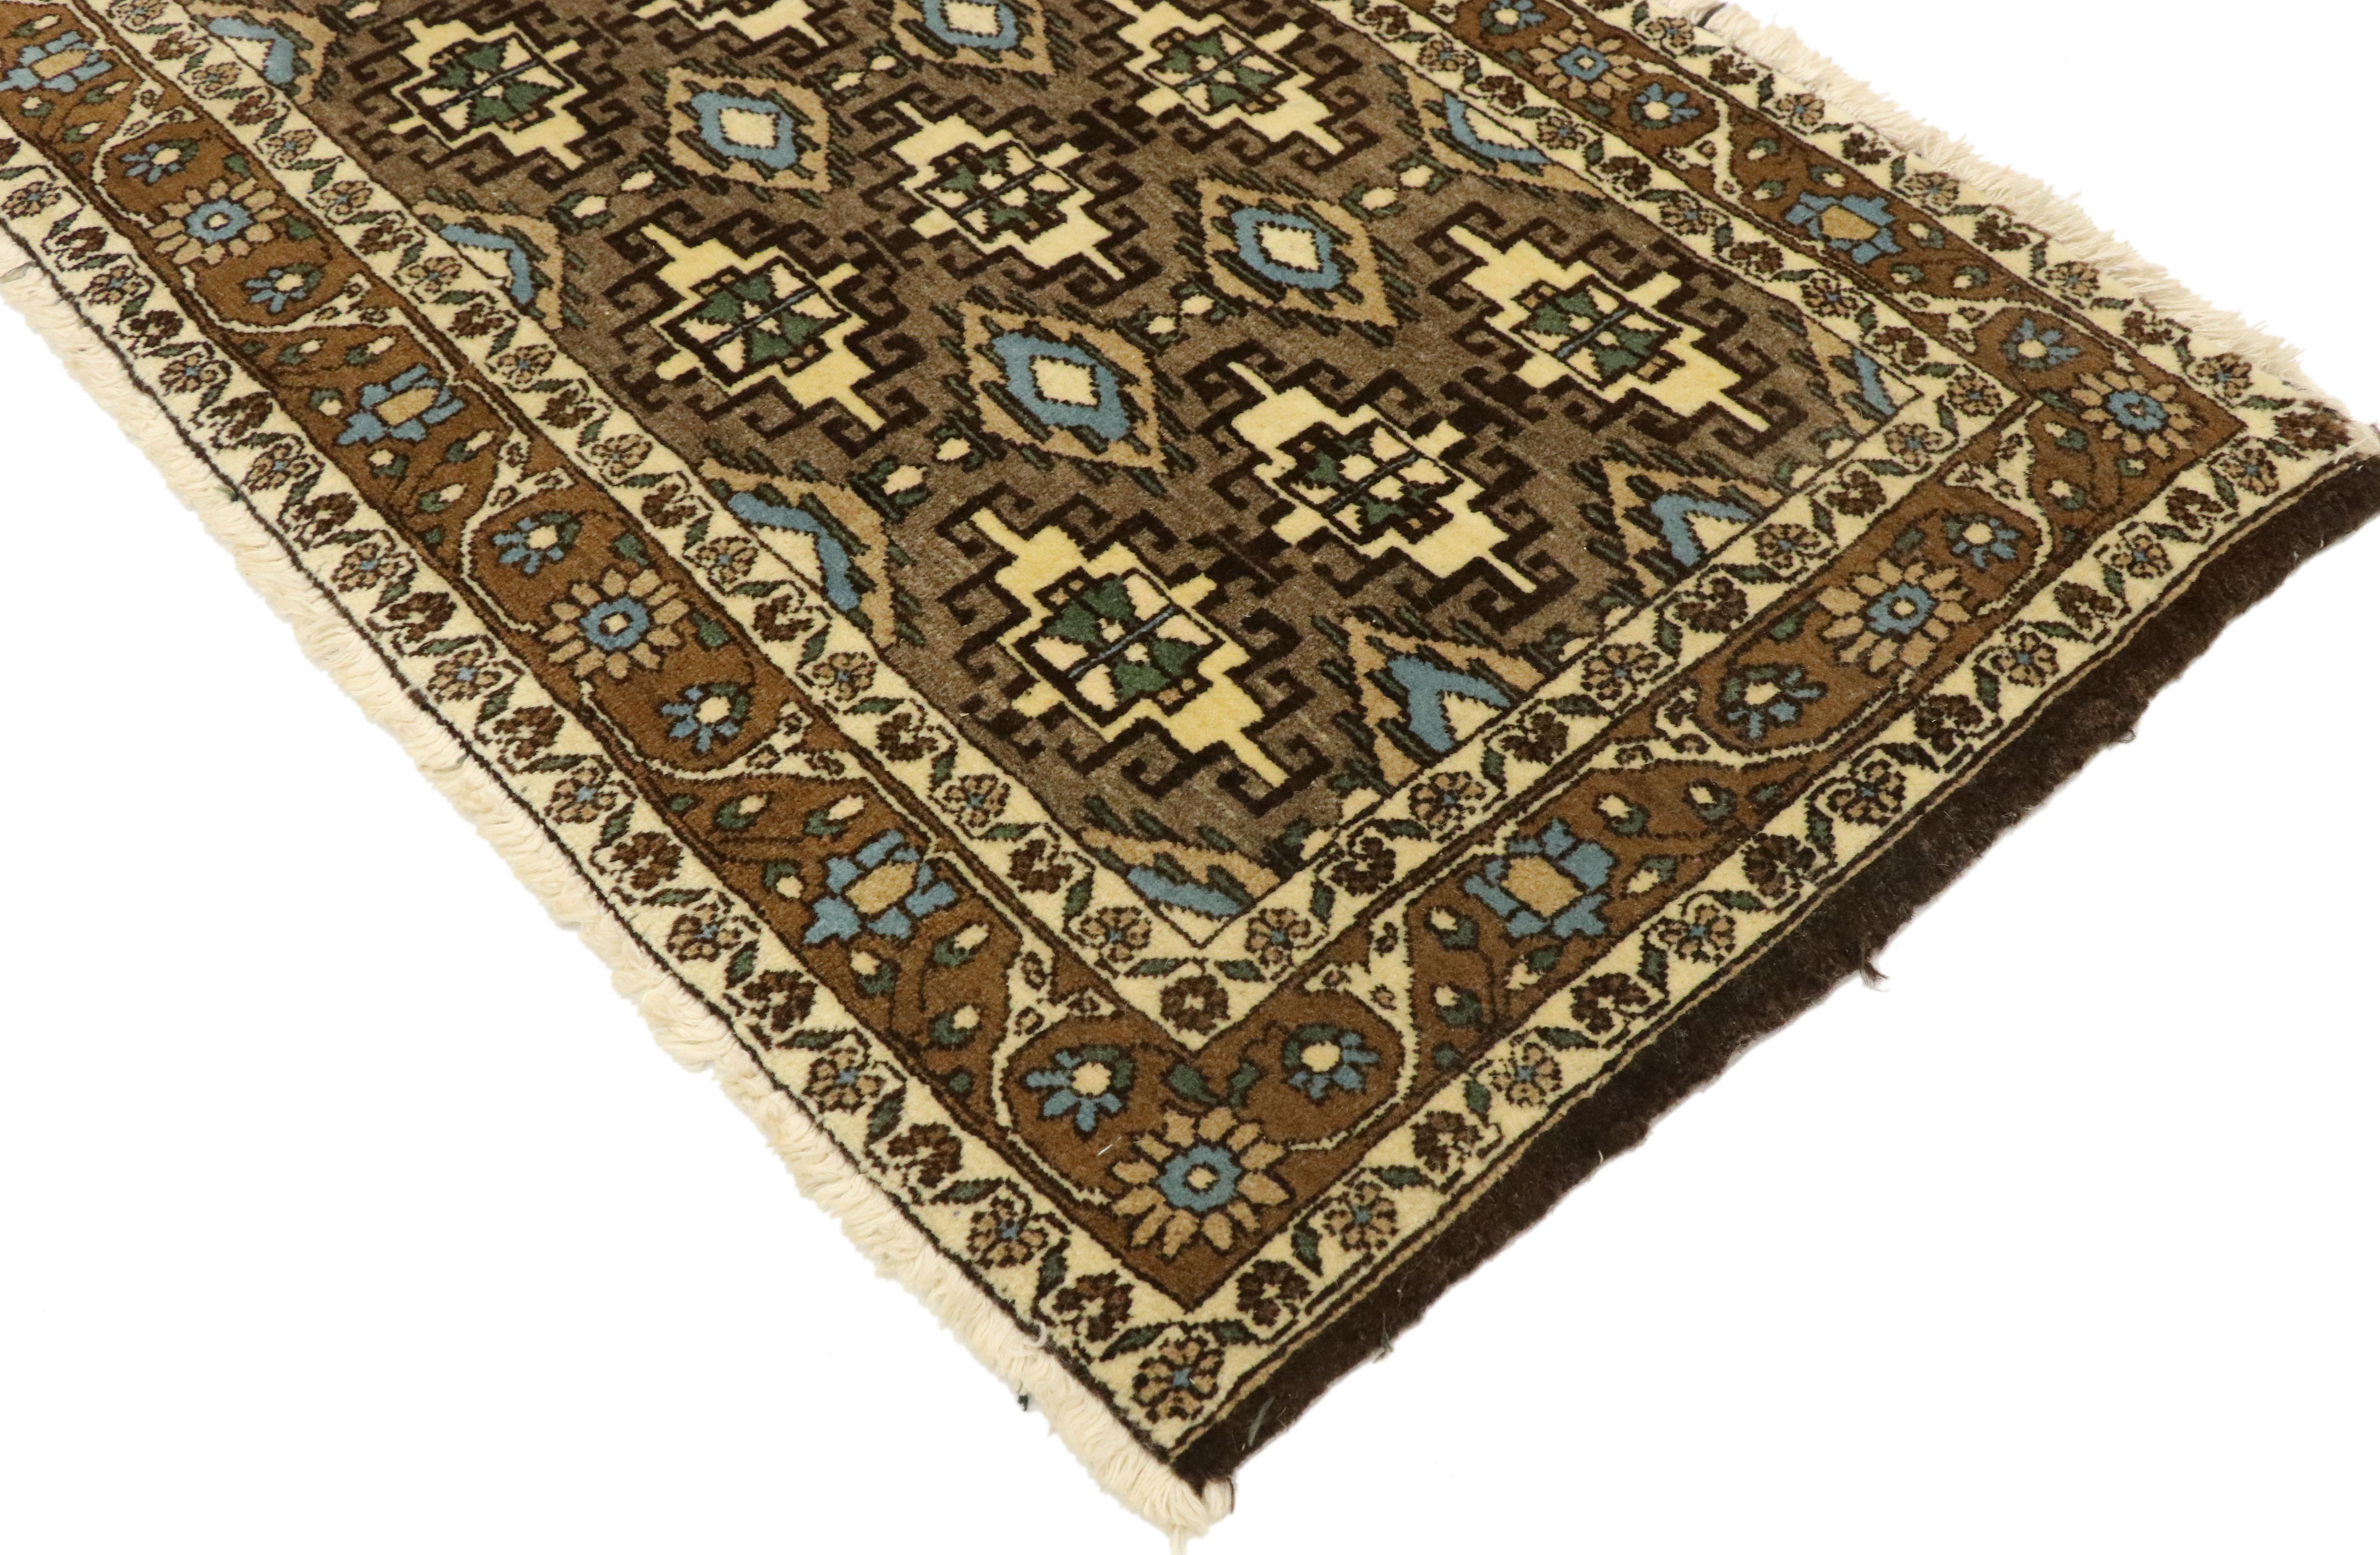 75165-75166, ein Paar zusammenpassender persischer Mashhad-Streuteppiche im Mid-Century Modern-Stil. Dieses Paar handgeknüpfter persischer Mashhad-Streuteppiche aus Wolle im Mid-Century-Modern-Stil ist zeitlos schön und lässt sich wunderbar mit